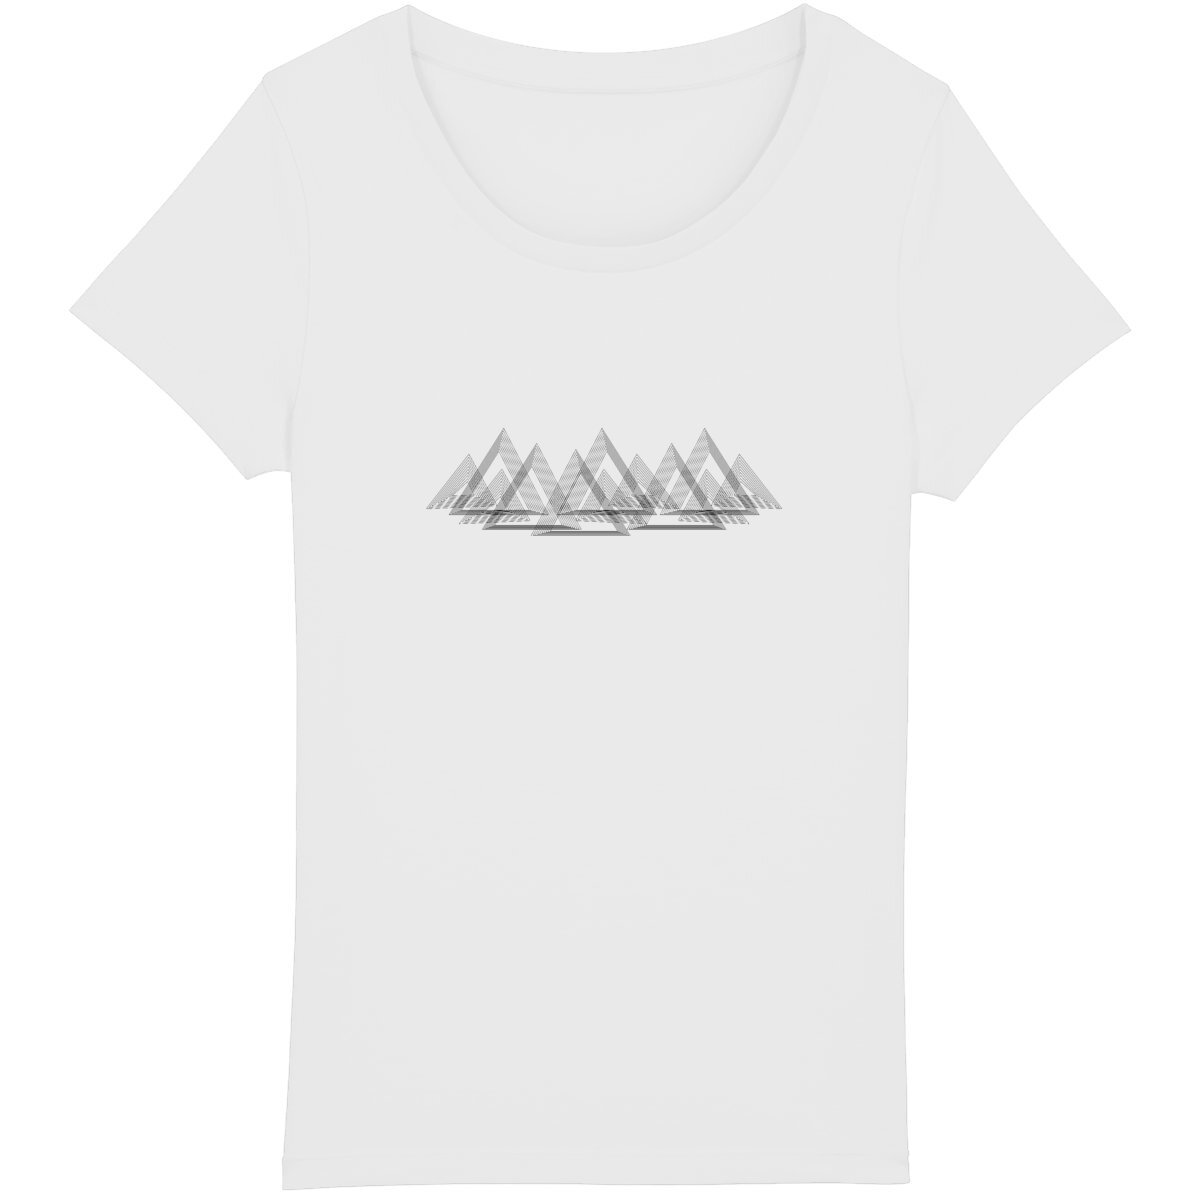 T-shirt trail montagnes épurées, alliant écologie et élégance